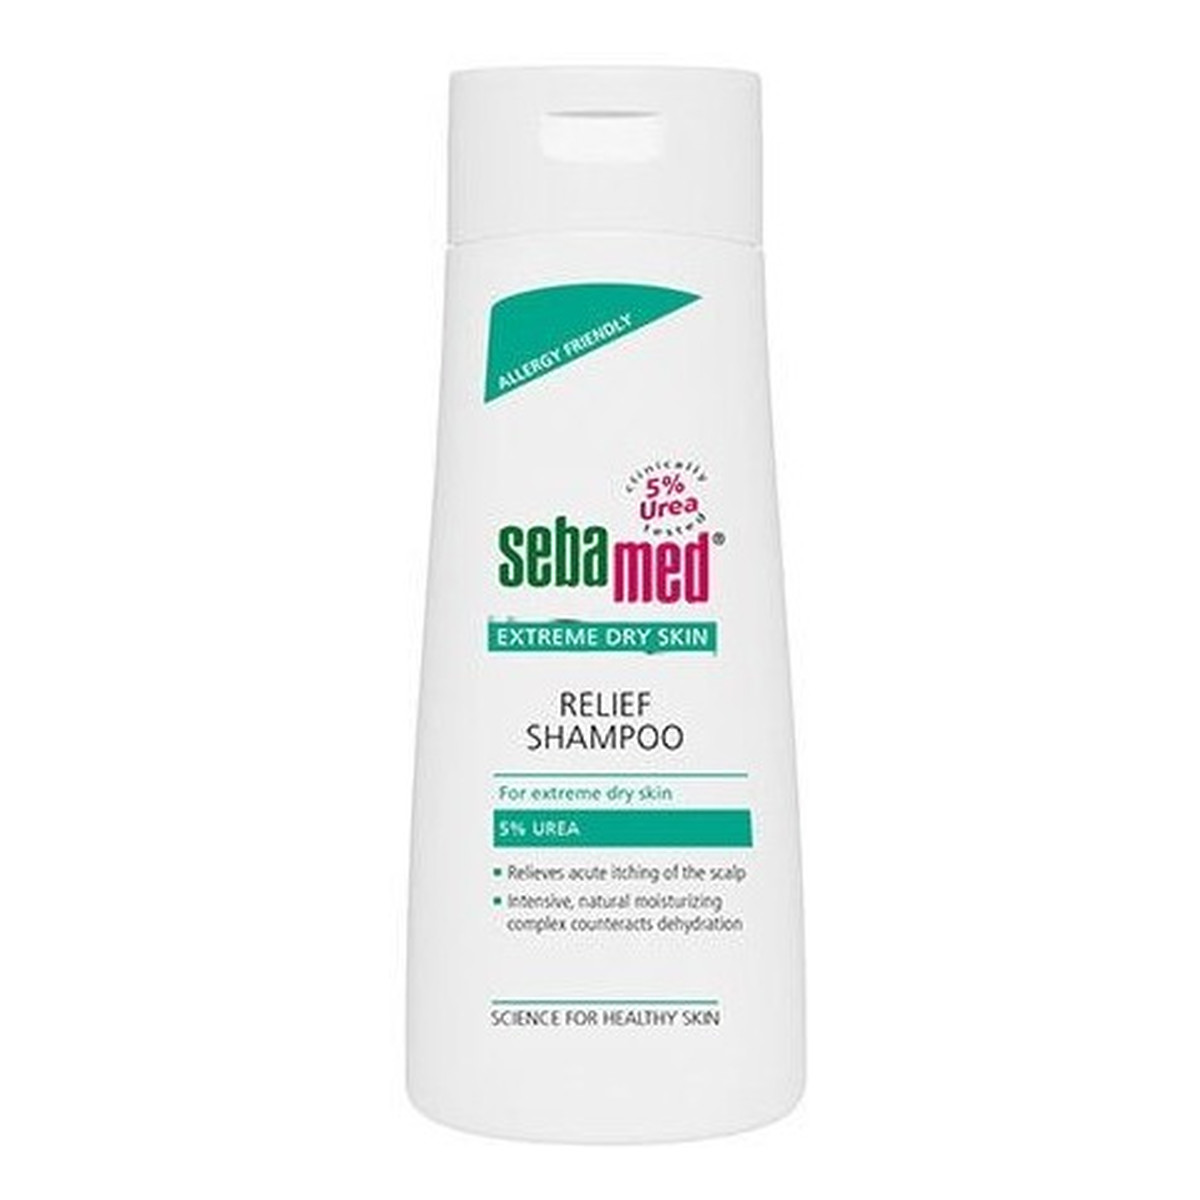 Sebamed Extreme Dry Skin 5% Urea Kojący szampon do bardzo suchych włosów 200ml